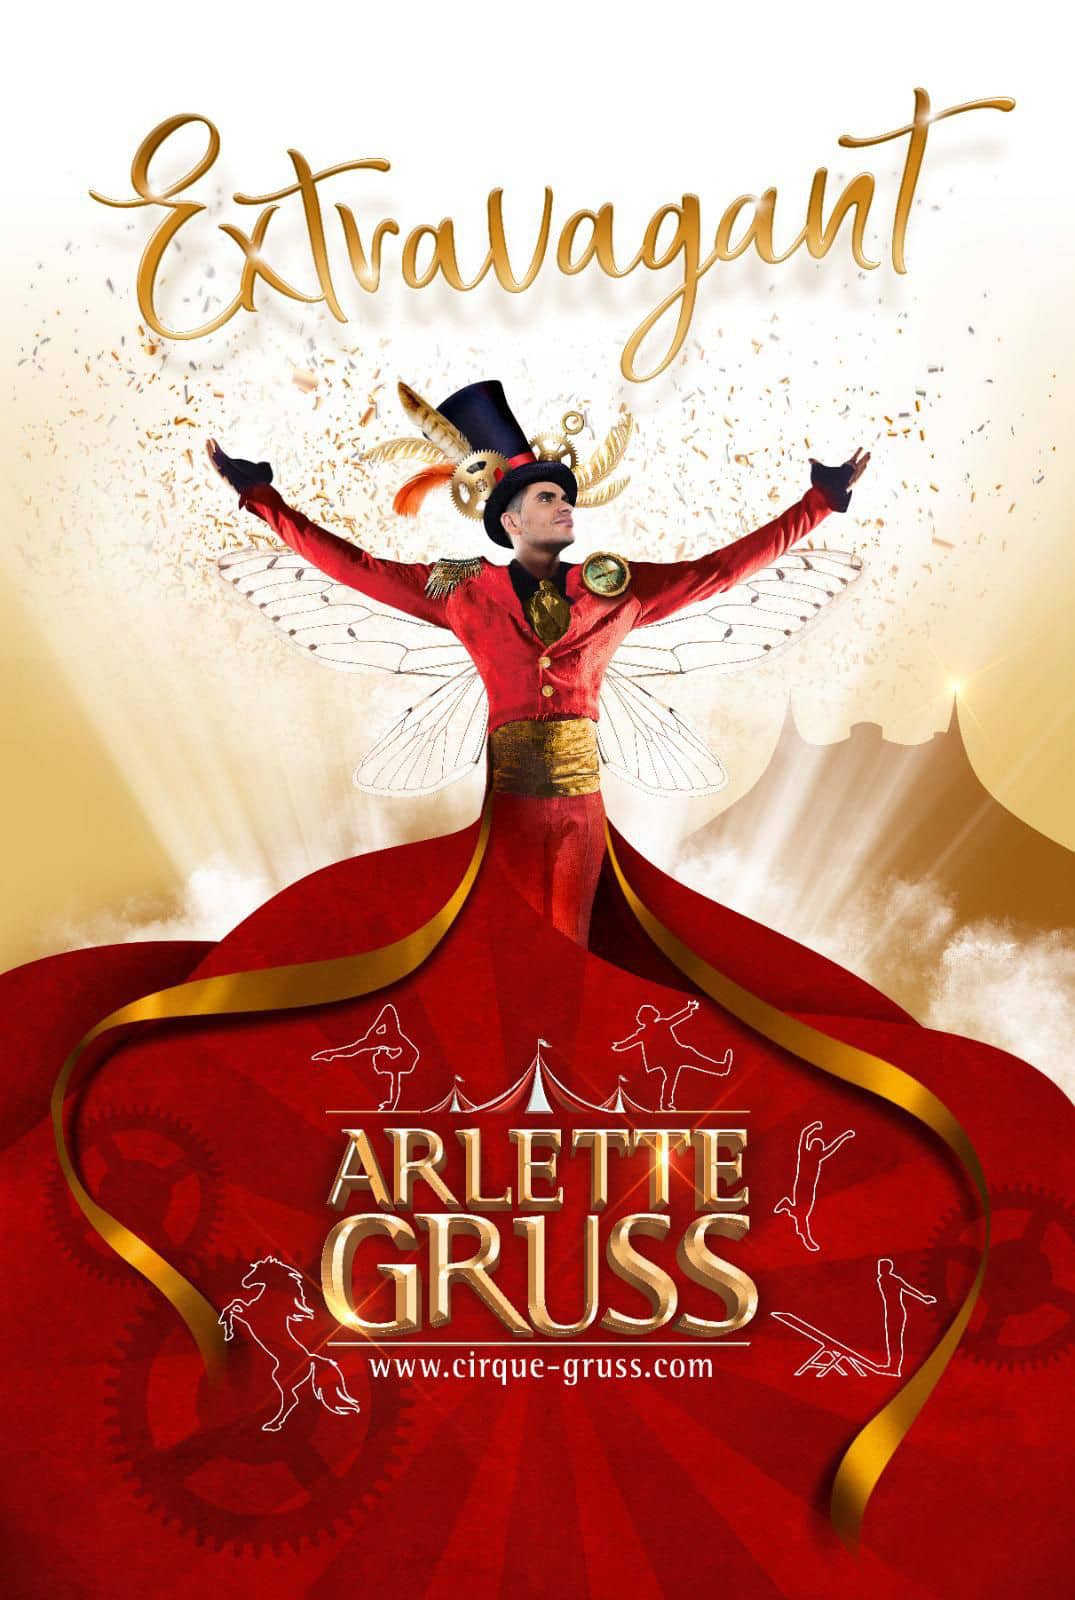 Une affiche pour le spectacle du cirque Arlette Gruss